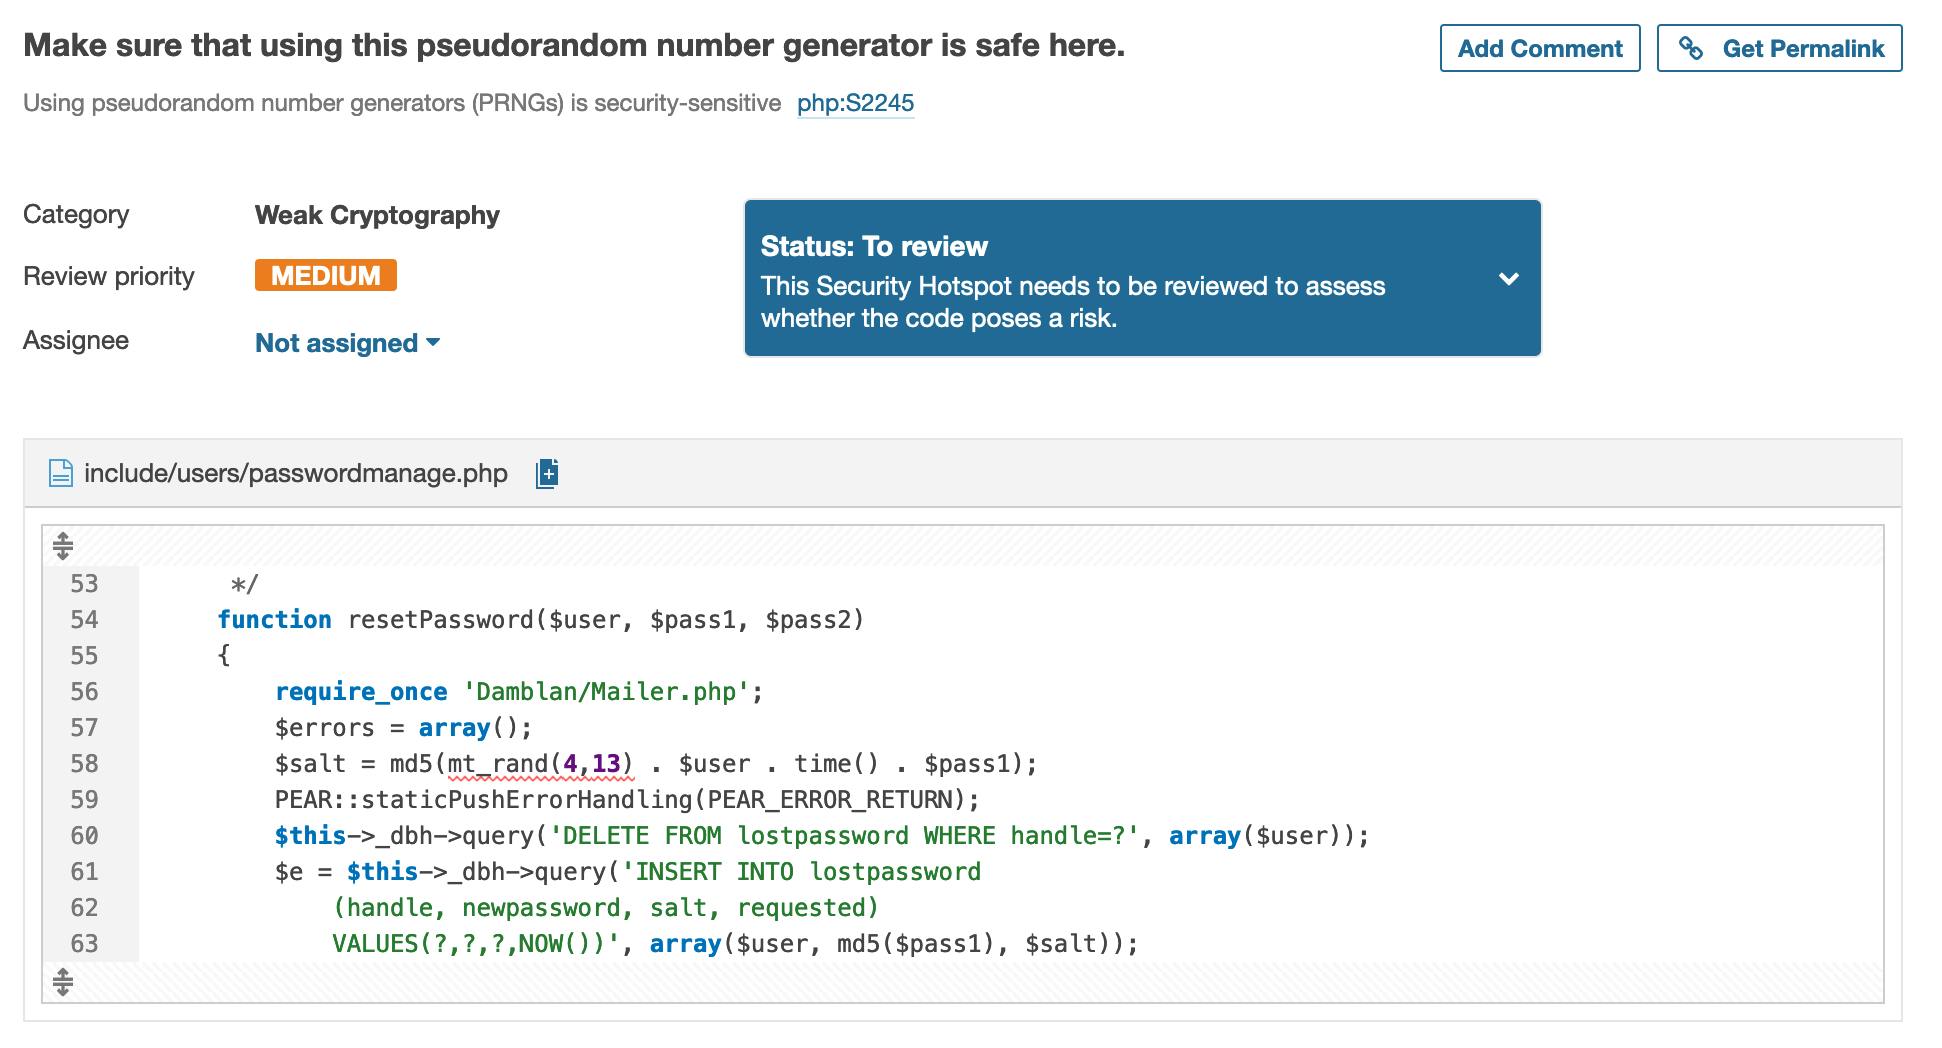 SonarCloud segnala l'uso di un generatore di numeri non sicuro in resetPassword()